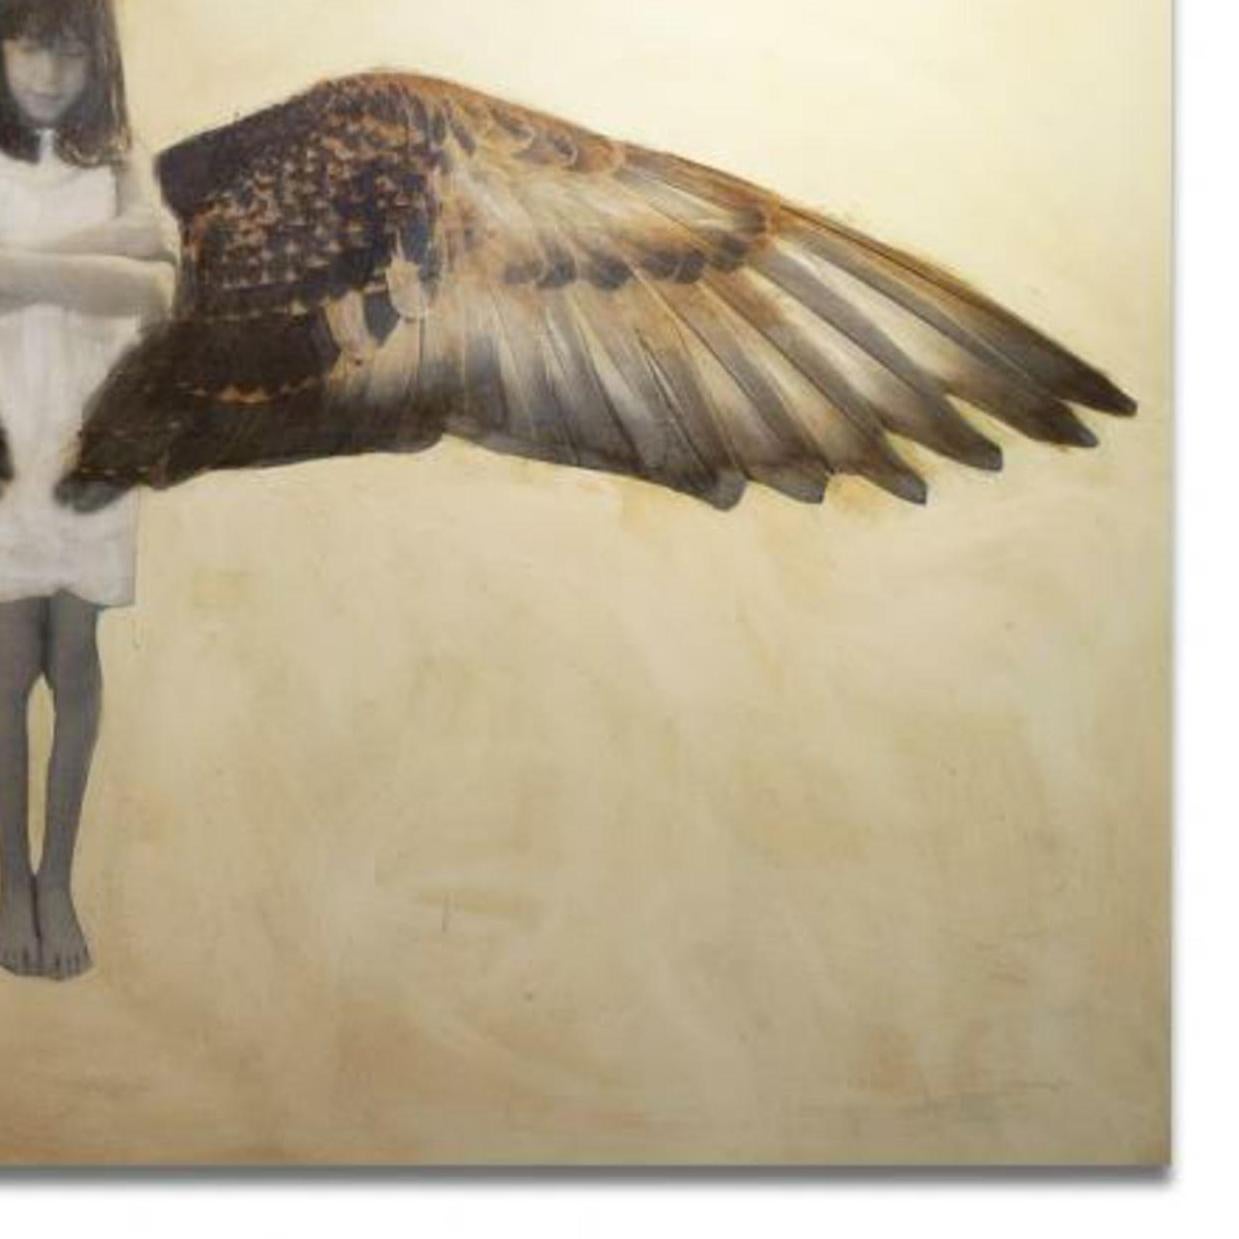 Wings von der Künstlerin Anke Schofield ist ein braunes und hellbraunes zeitgenössisches figuratives Kunstharzgemisch auf einer Platte mit den Maßen 48 x 72 und einem Preis von $10.500.

Anke Schofield wurde 1972 in Ithaca, New York, geboren und